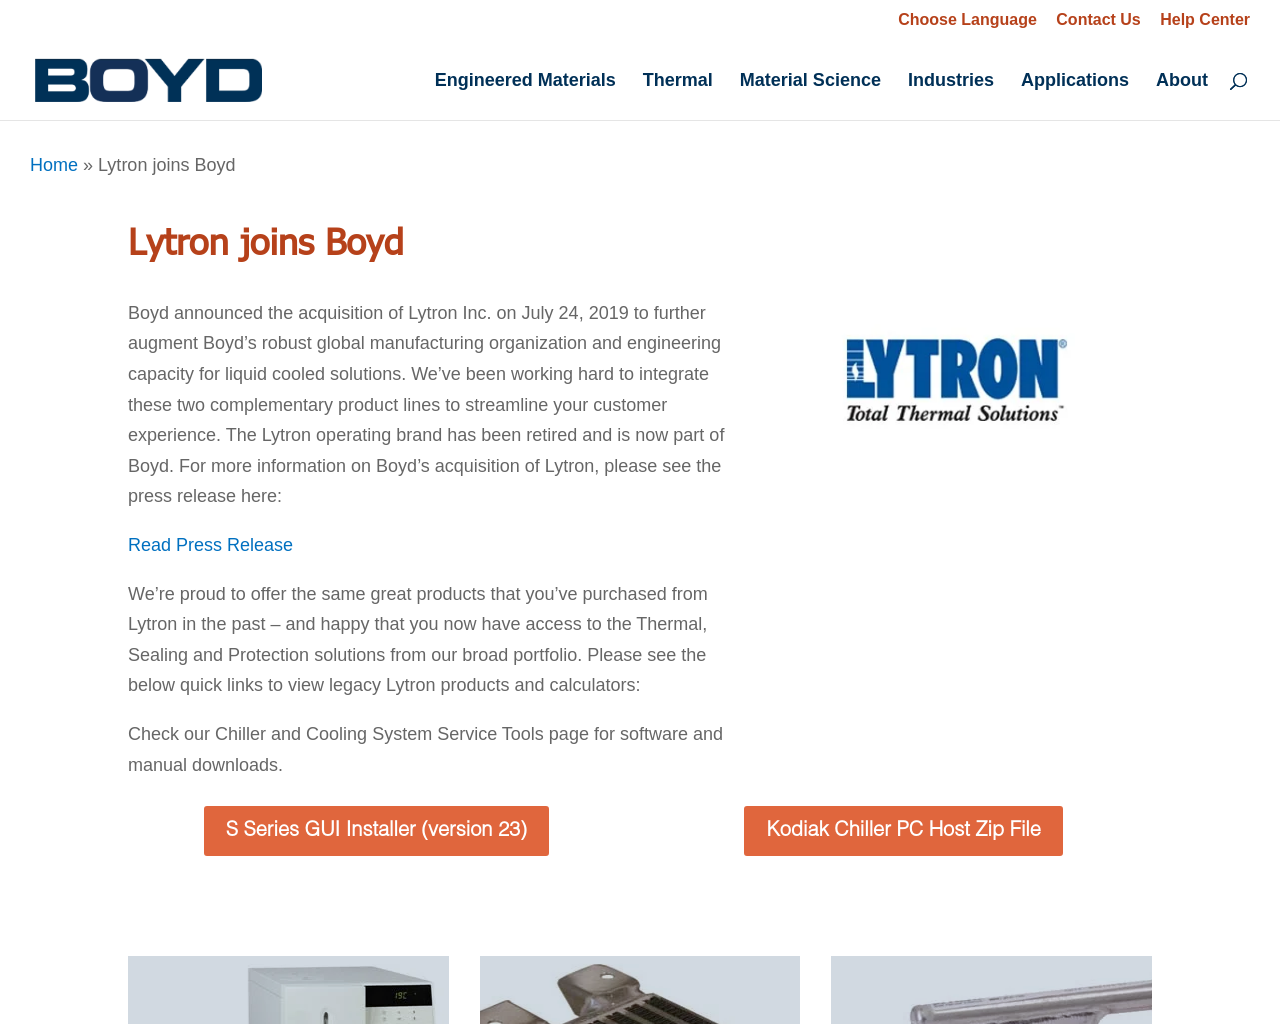 lytron.com